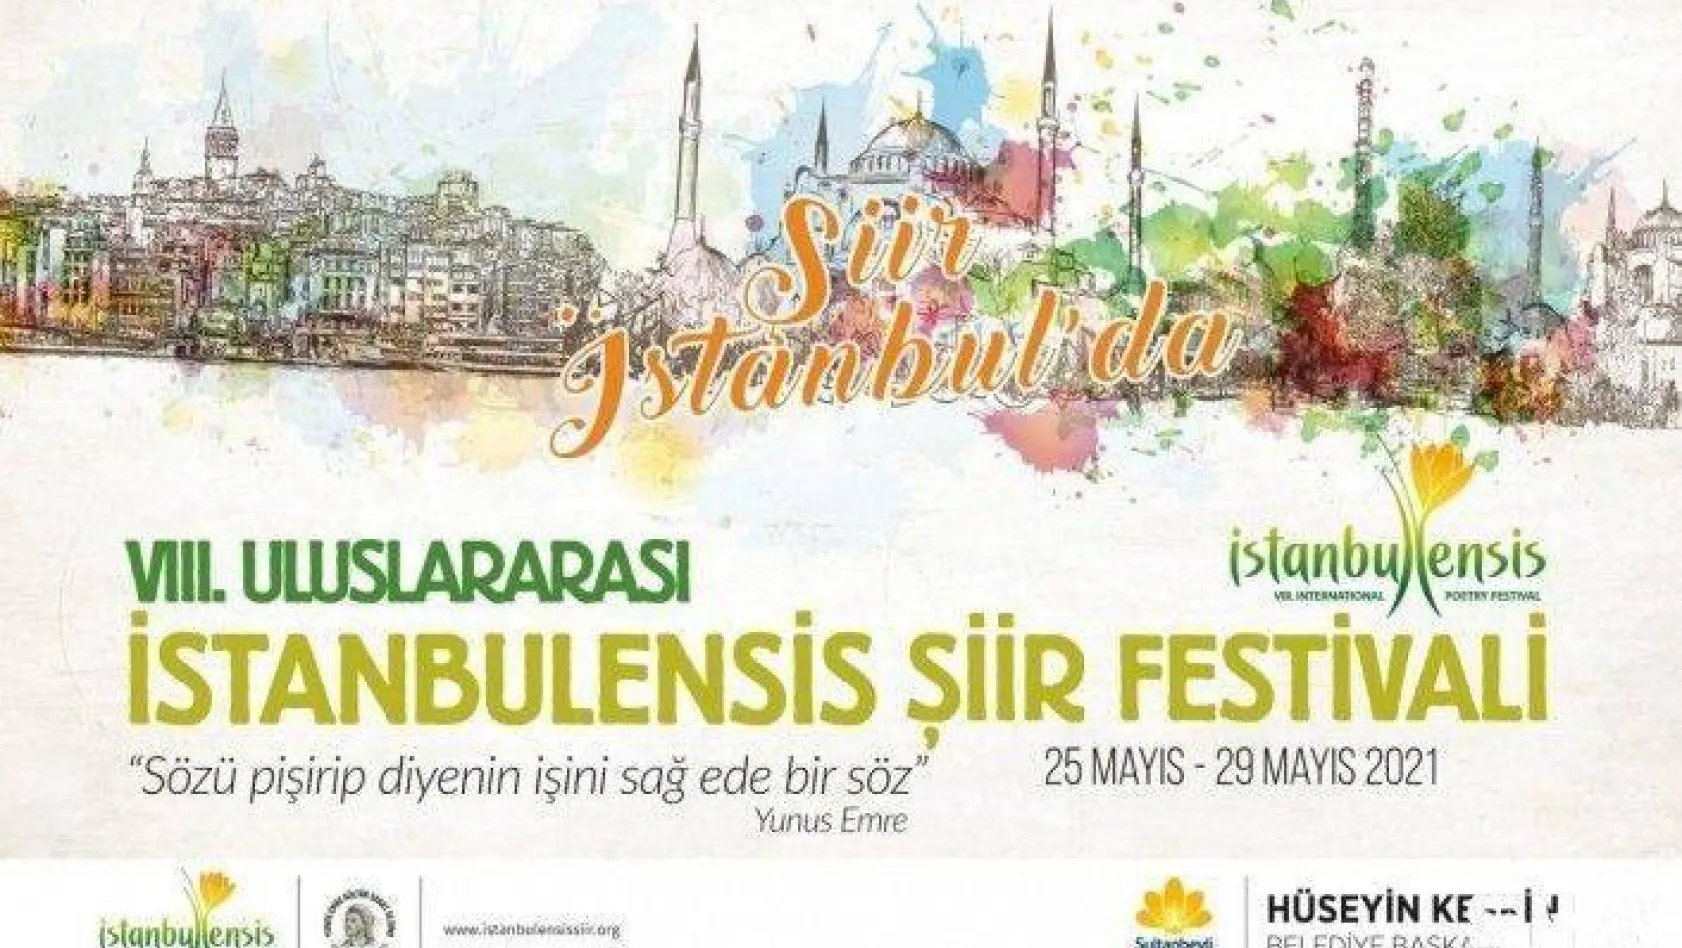 VIII. Uluslararası İstanbulensis Şiir Festivali 'Yunus Emre' temasıyla başlıyor